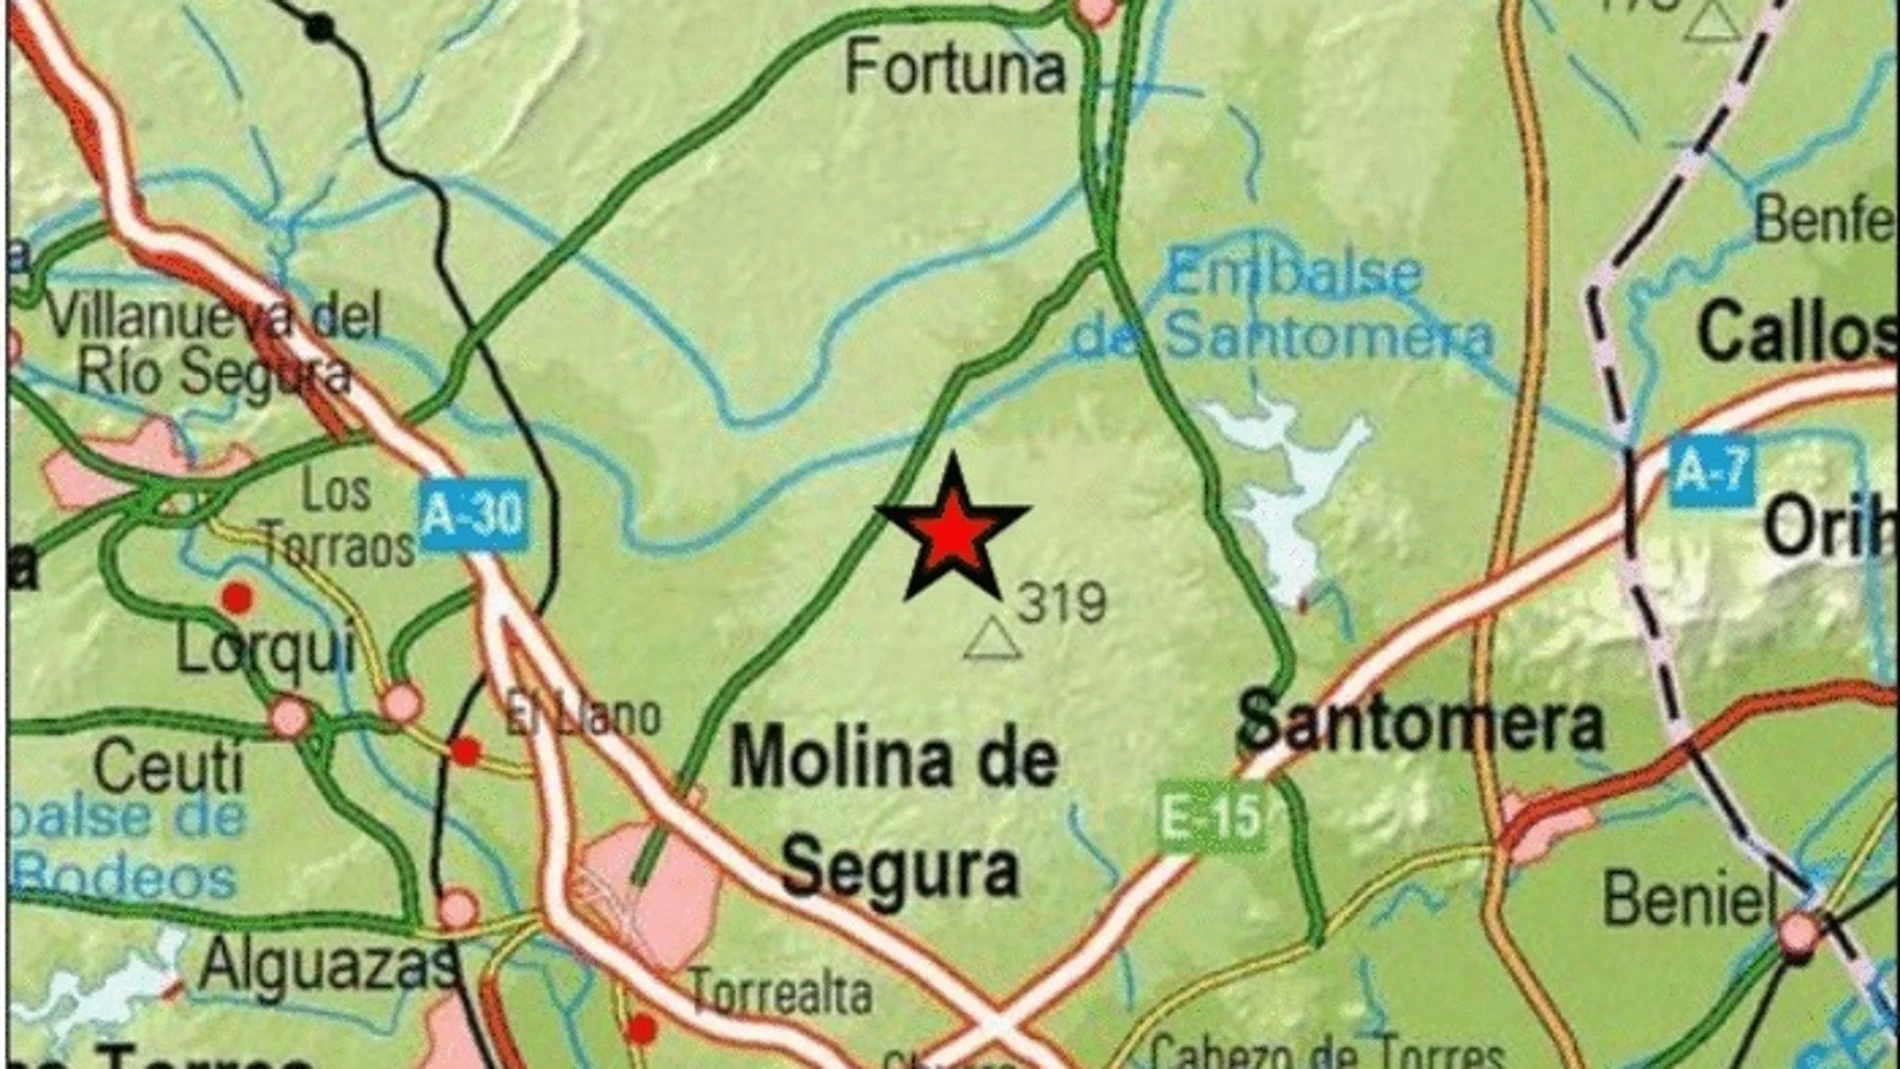 Epicentro del terremoto, en el mapaEpicentro del terremoto, en el mapa23/3/2020